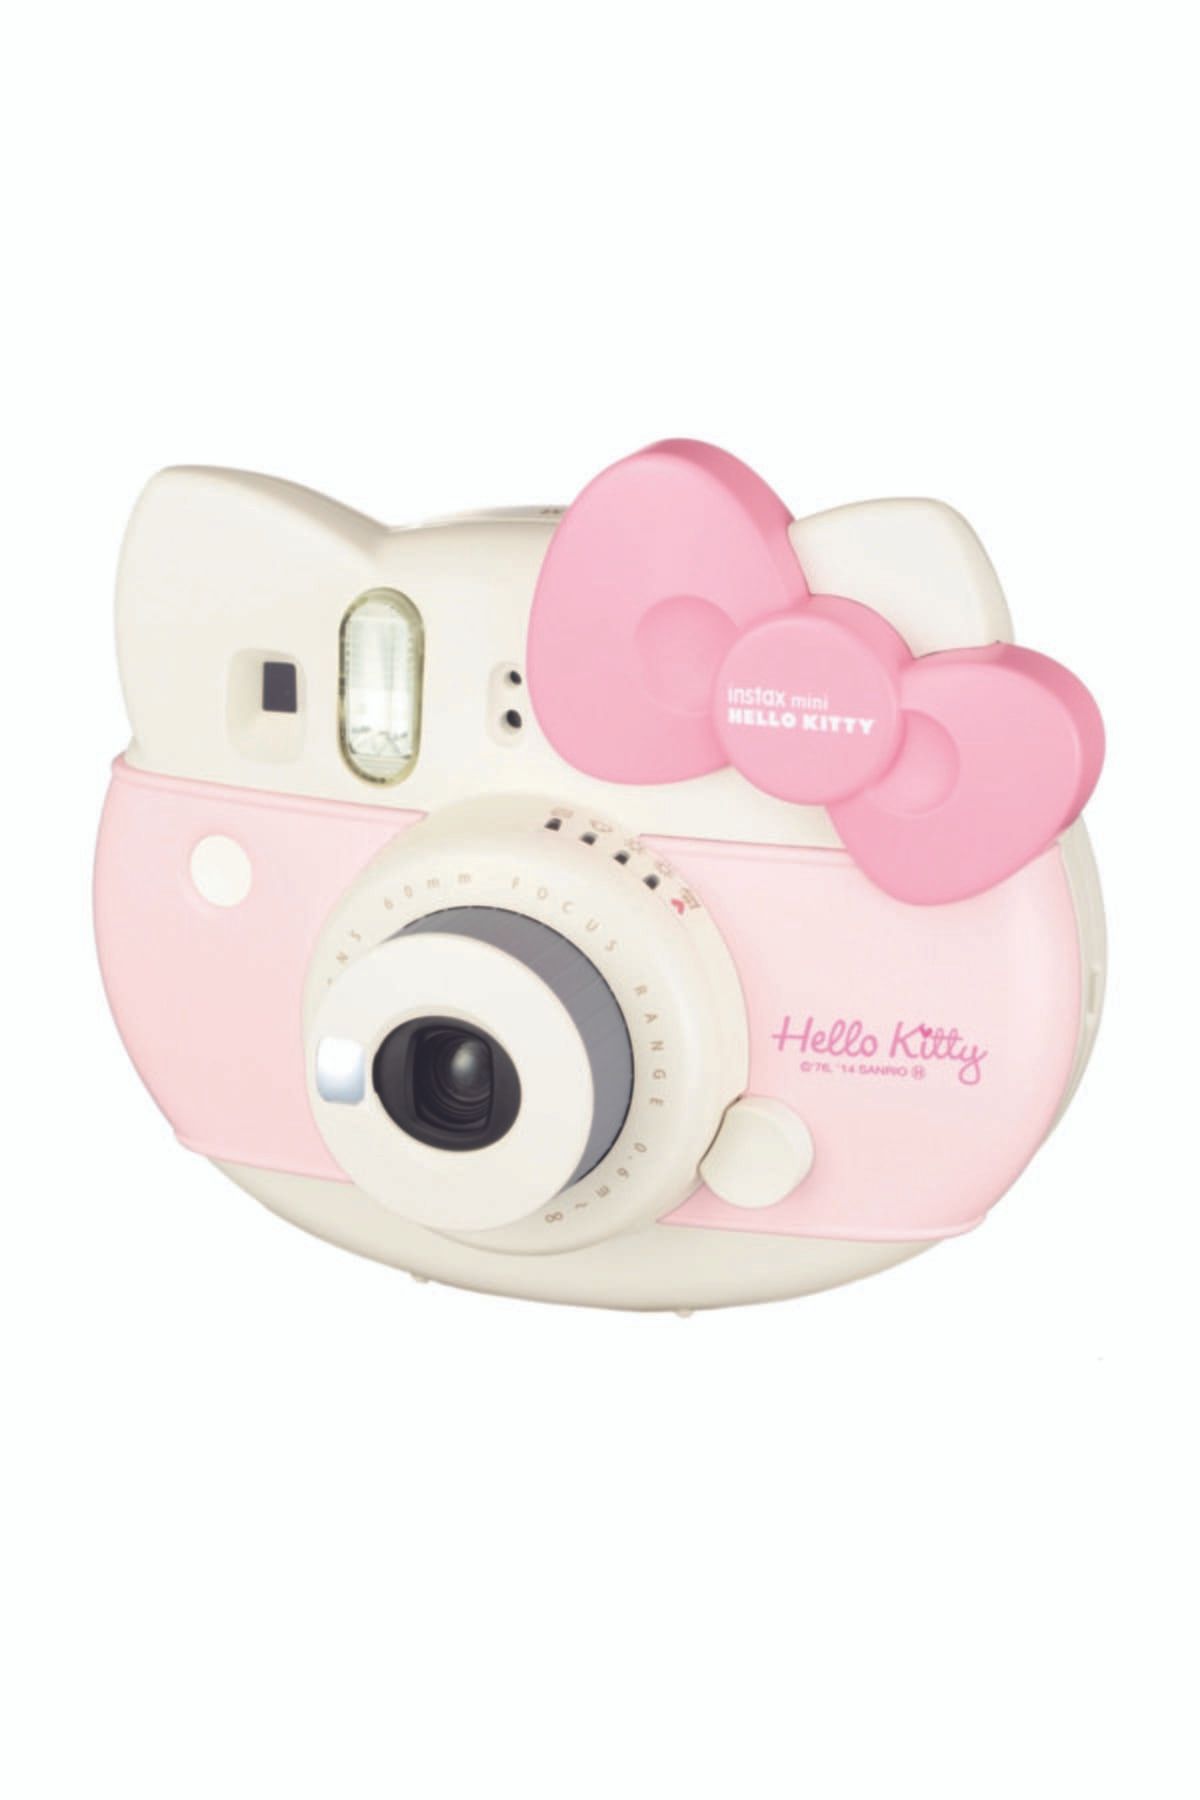 Fujifilm Instax Mini Hello Kitty Kamera